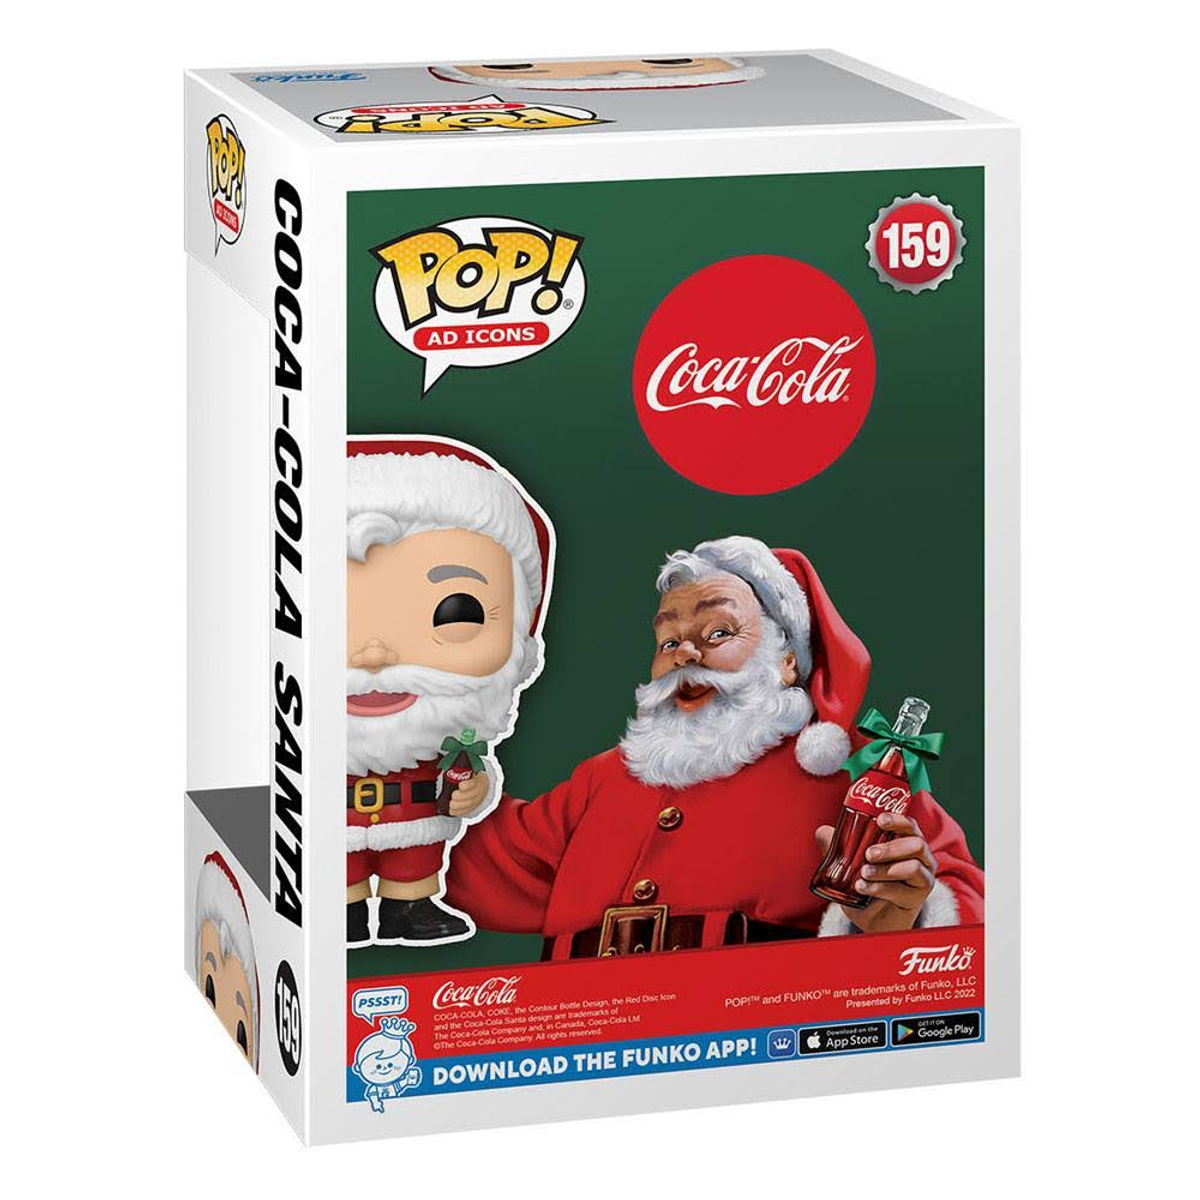 POP - Ad Icons - Santa - Coca-Cola